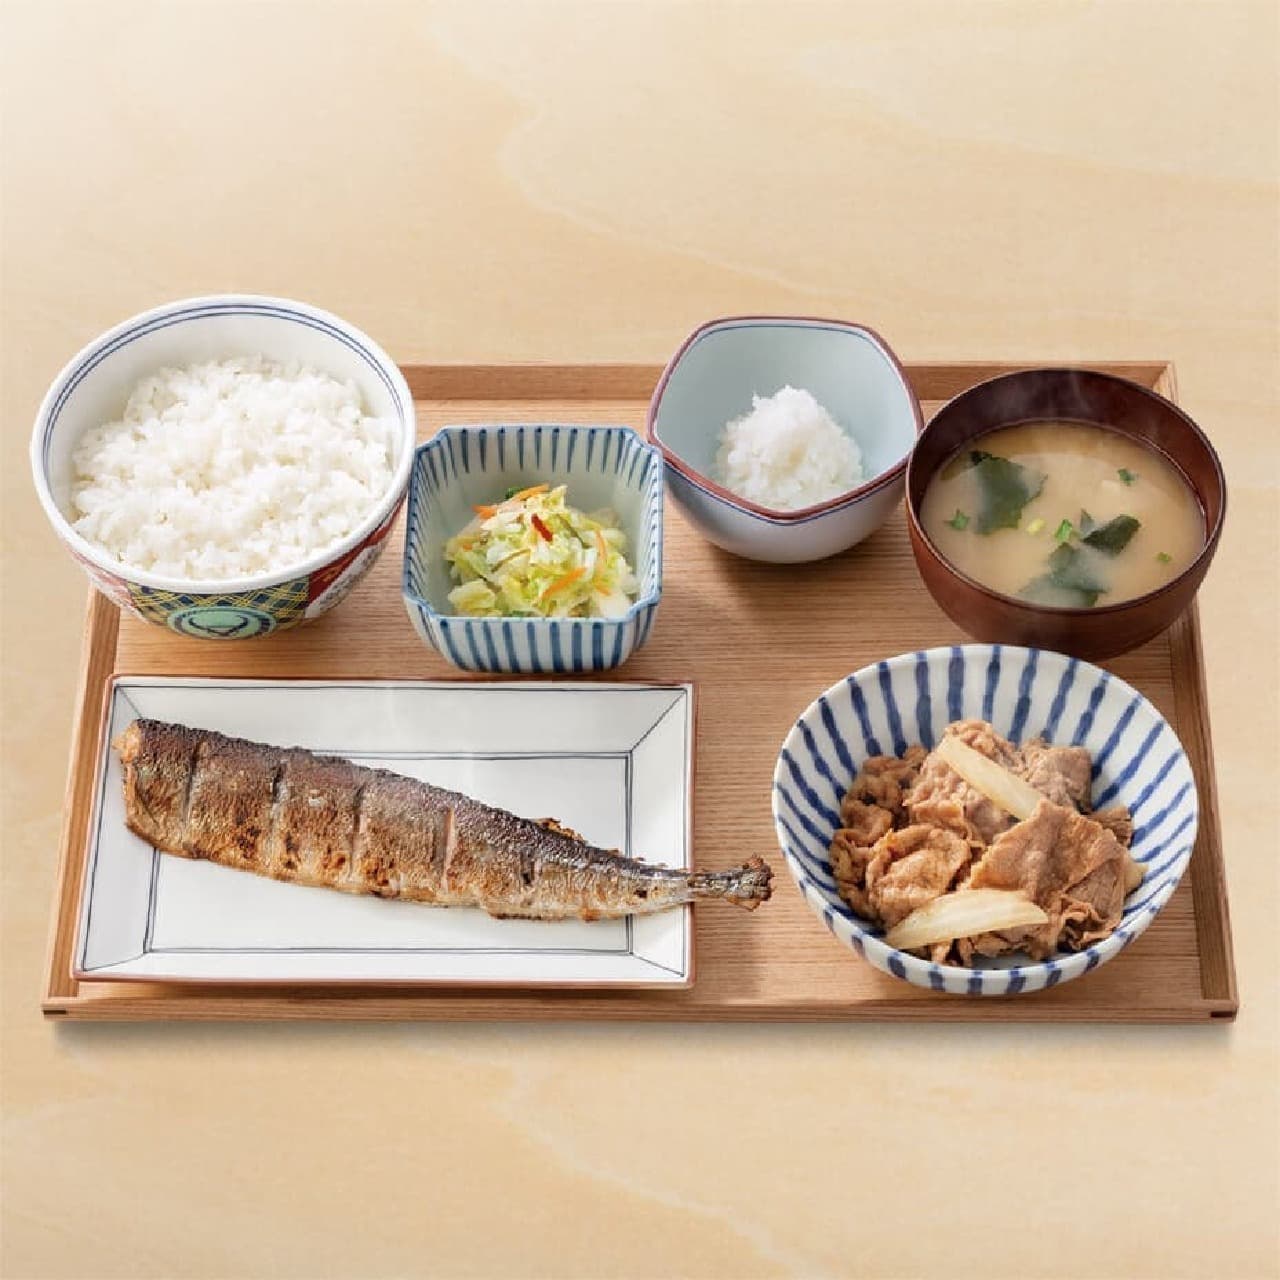 Yoshinoya "Saury charcoal-grilled beef set meal"